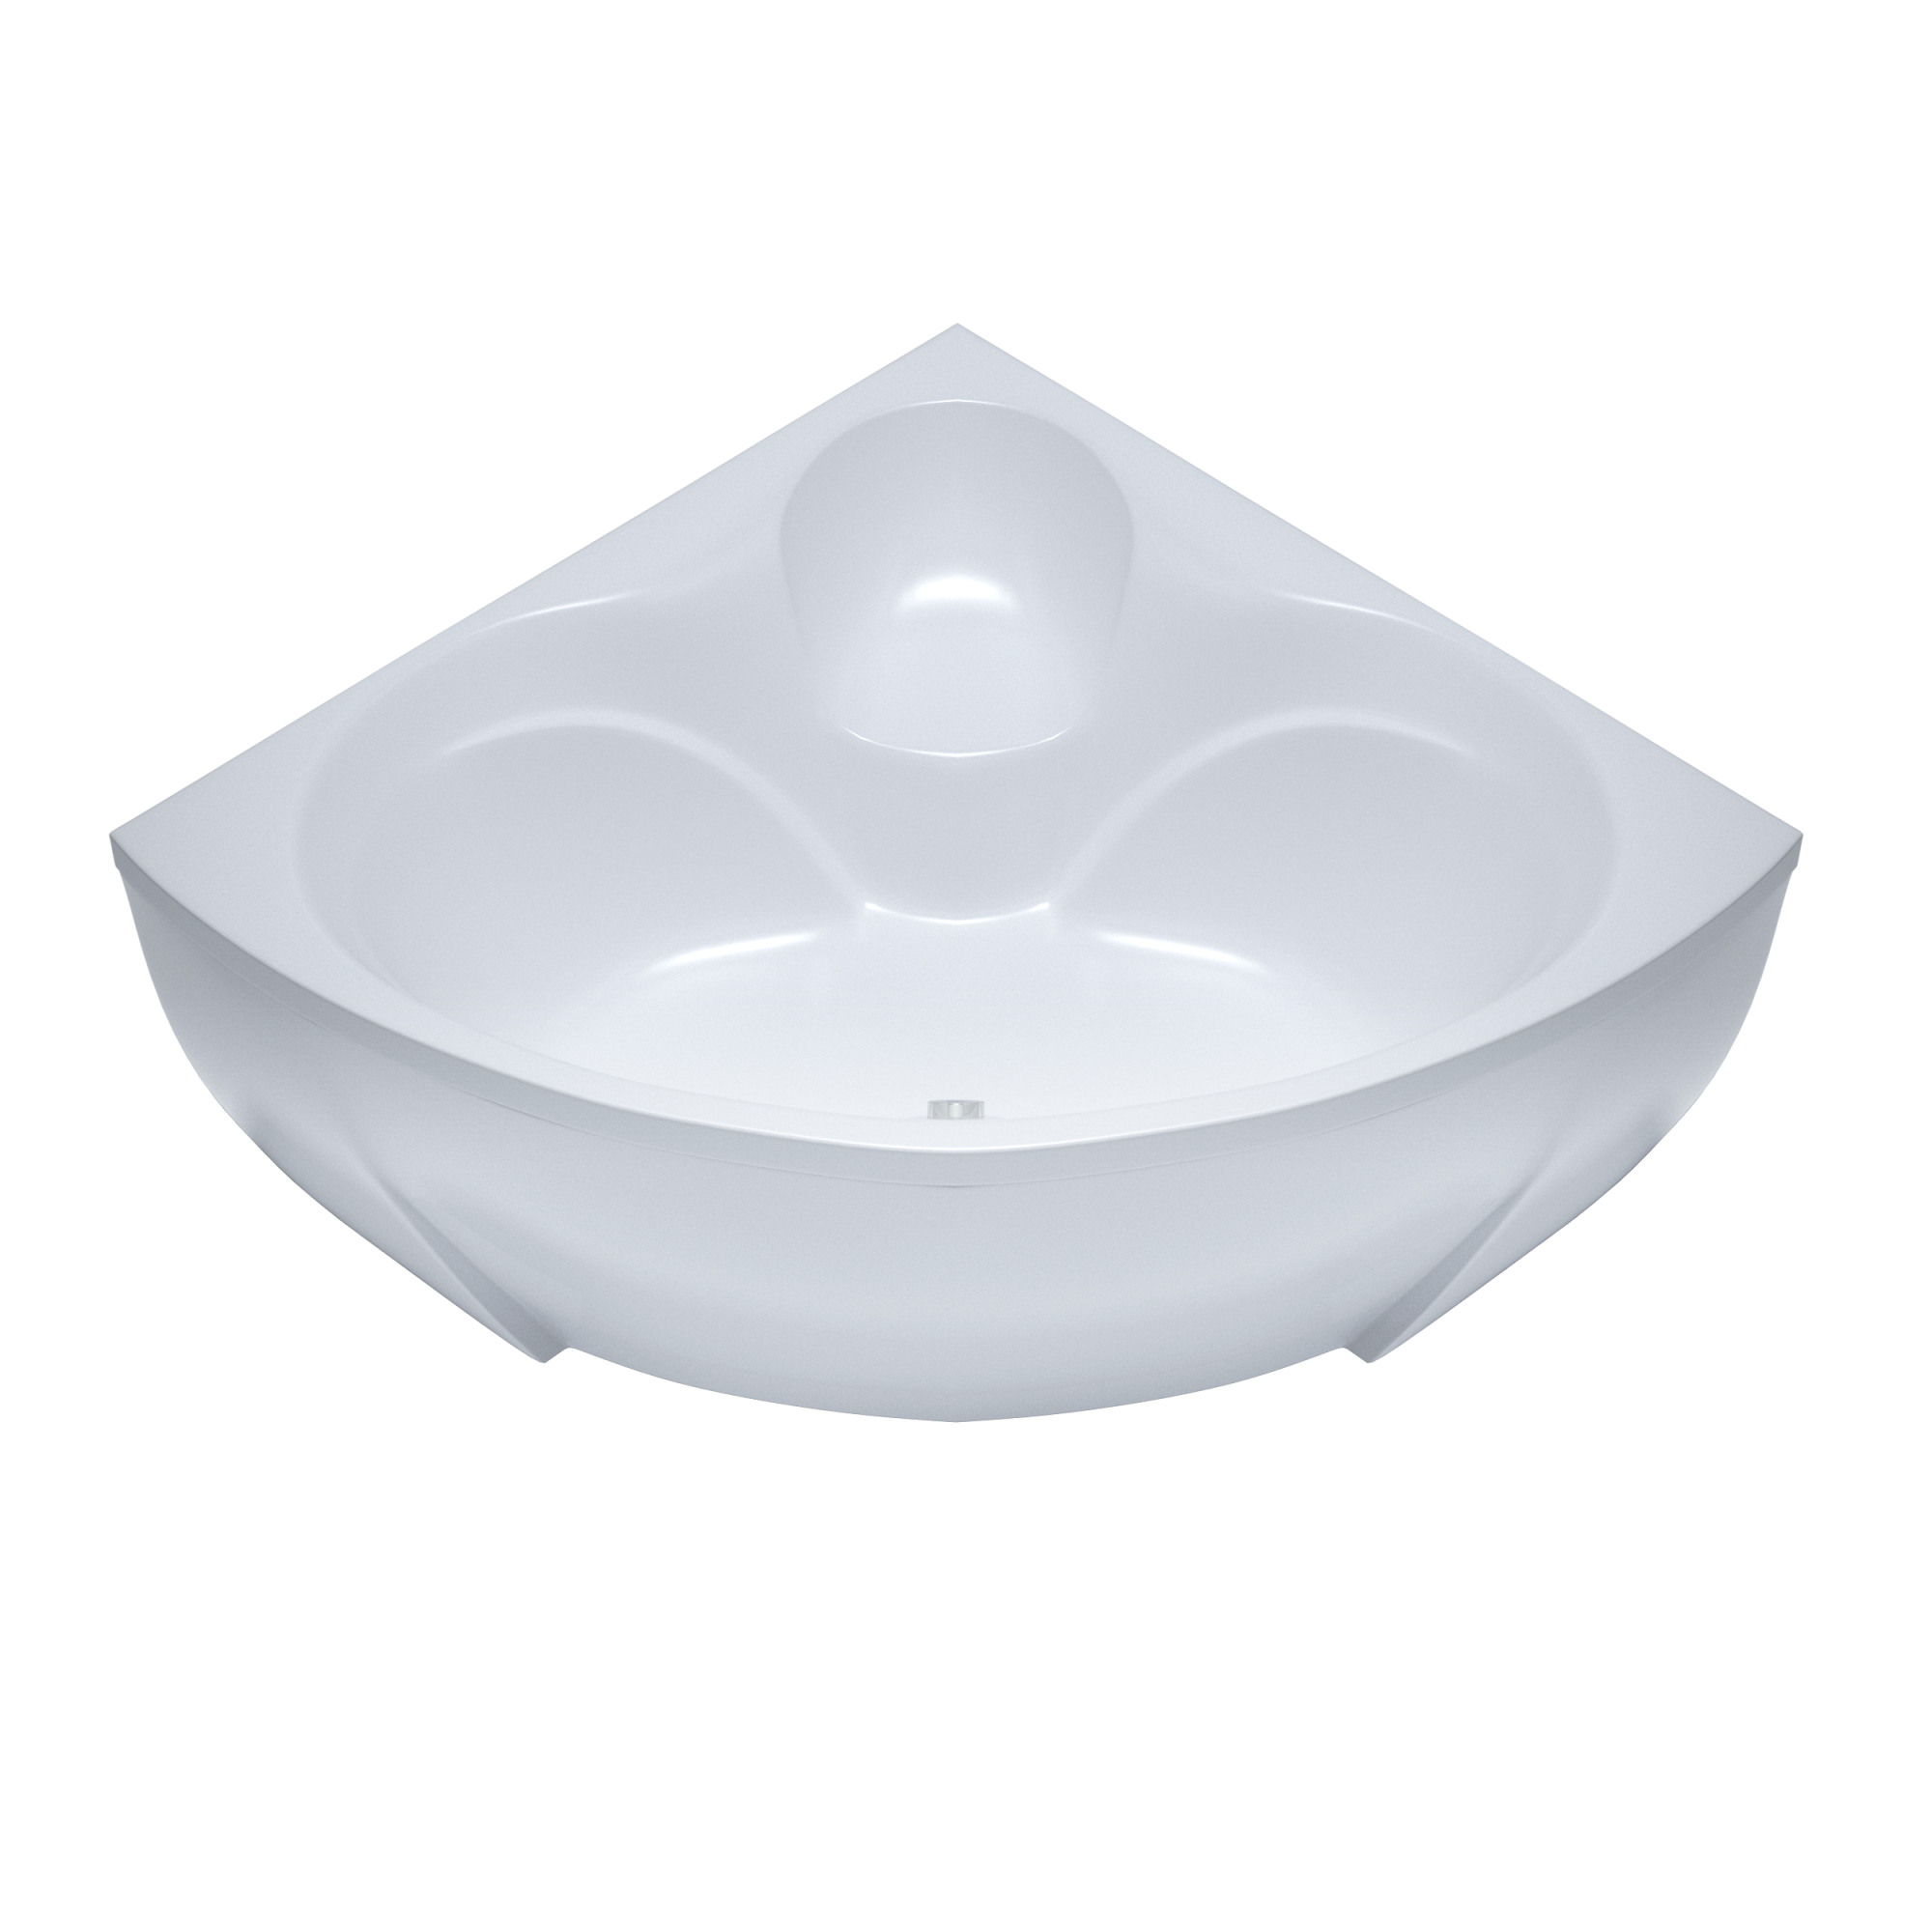 Акриловая ванна Triton Сабина 160x160